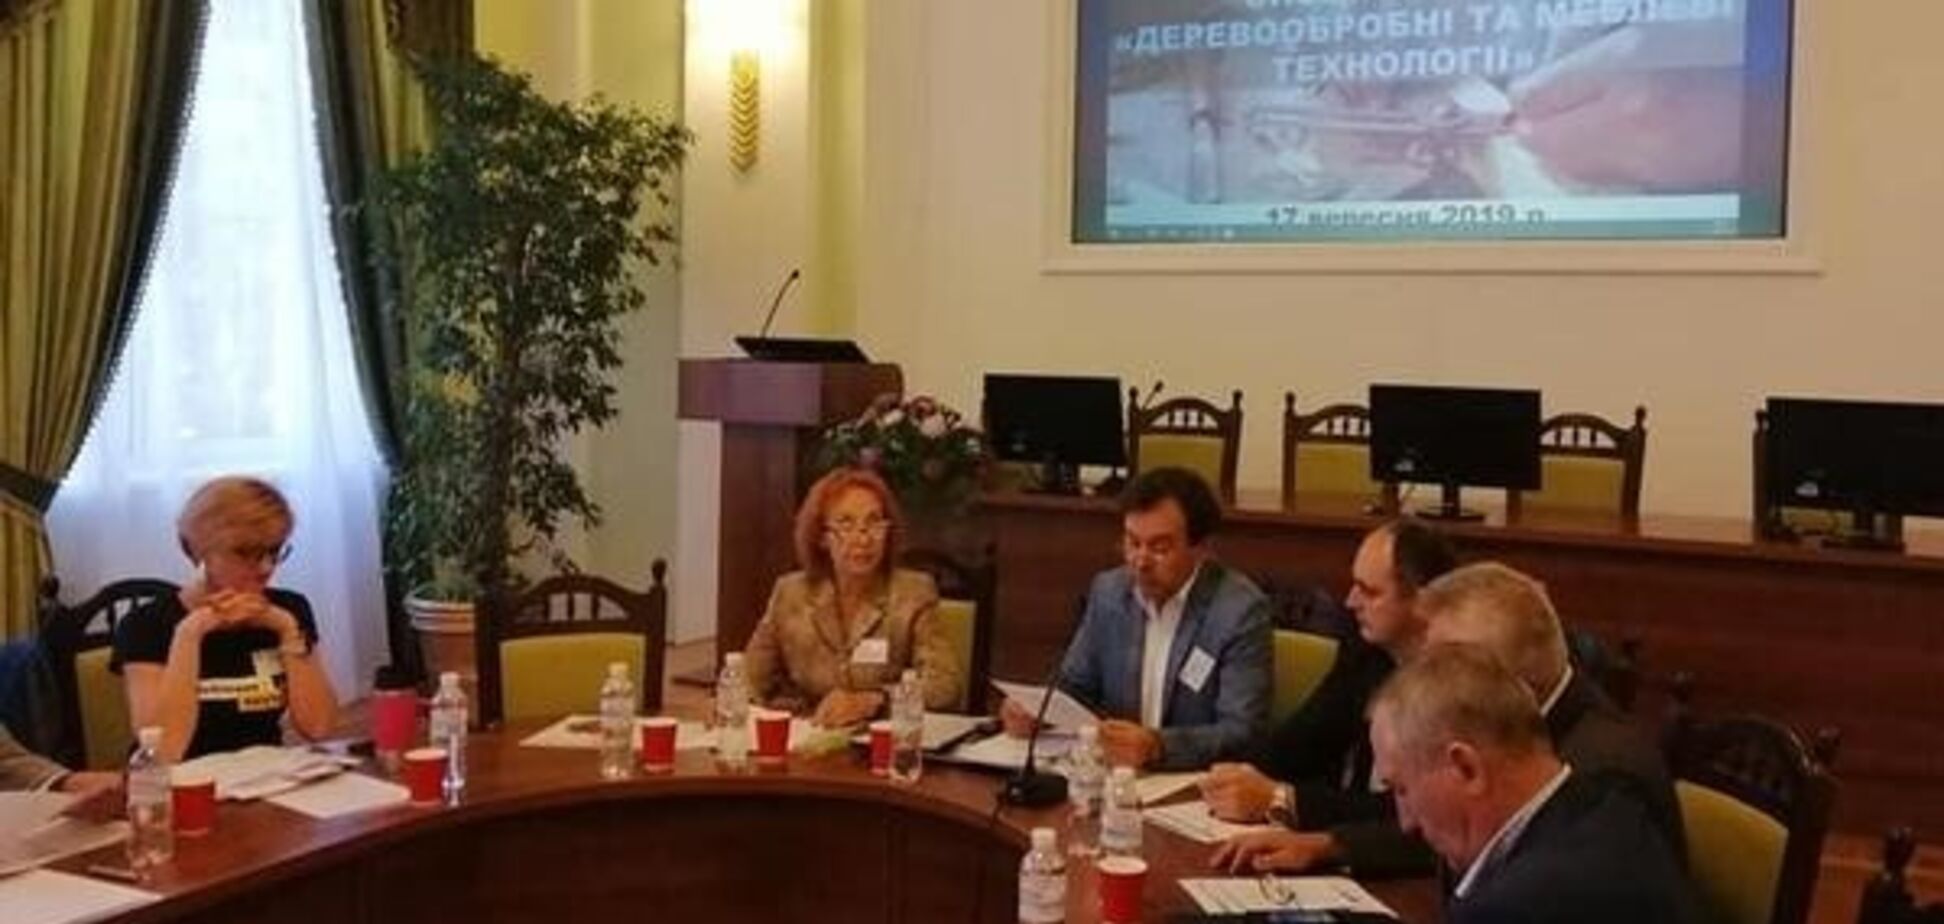 Закон о рынке древесины в Украине: эксперты устроили острую дискуссию